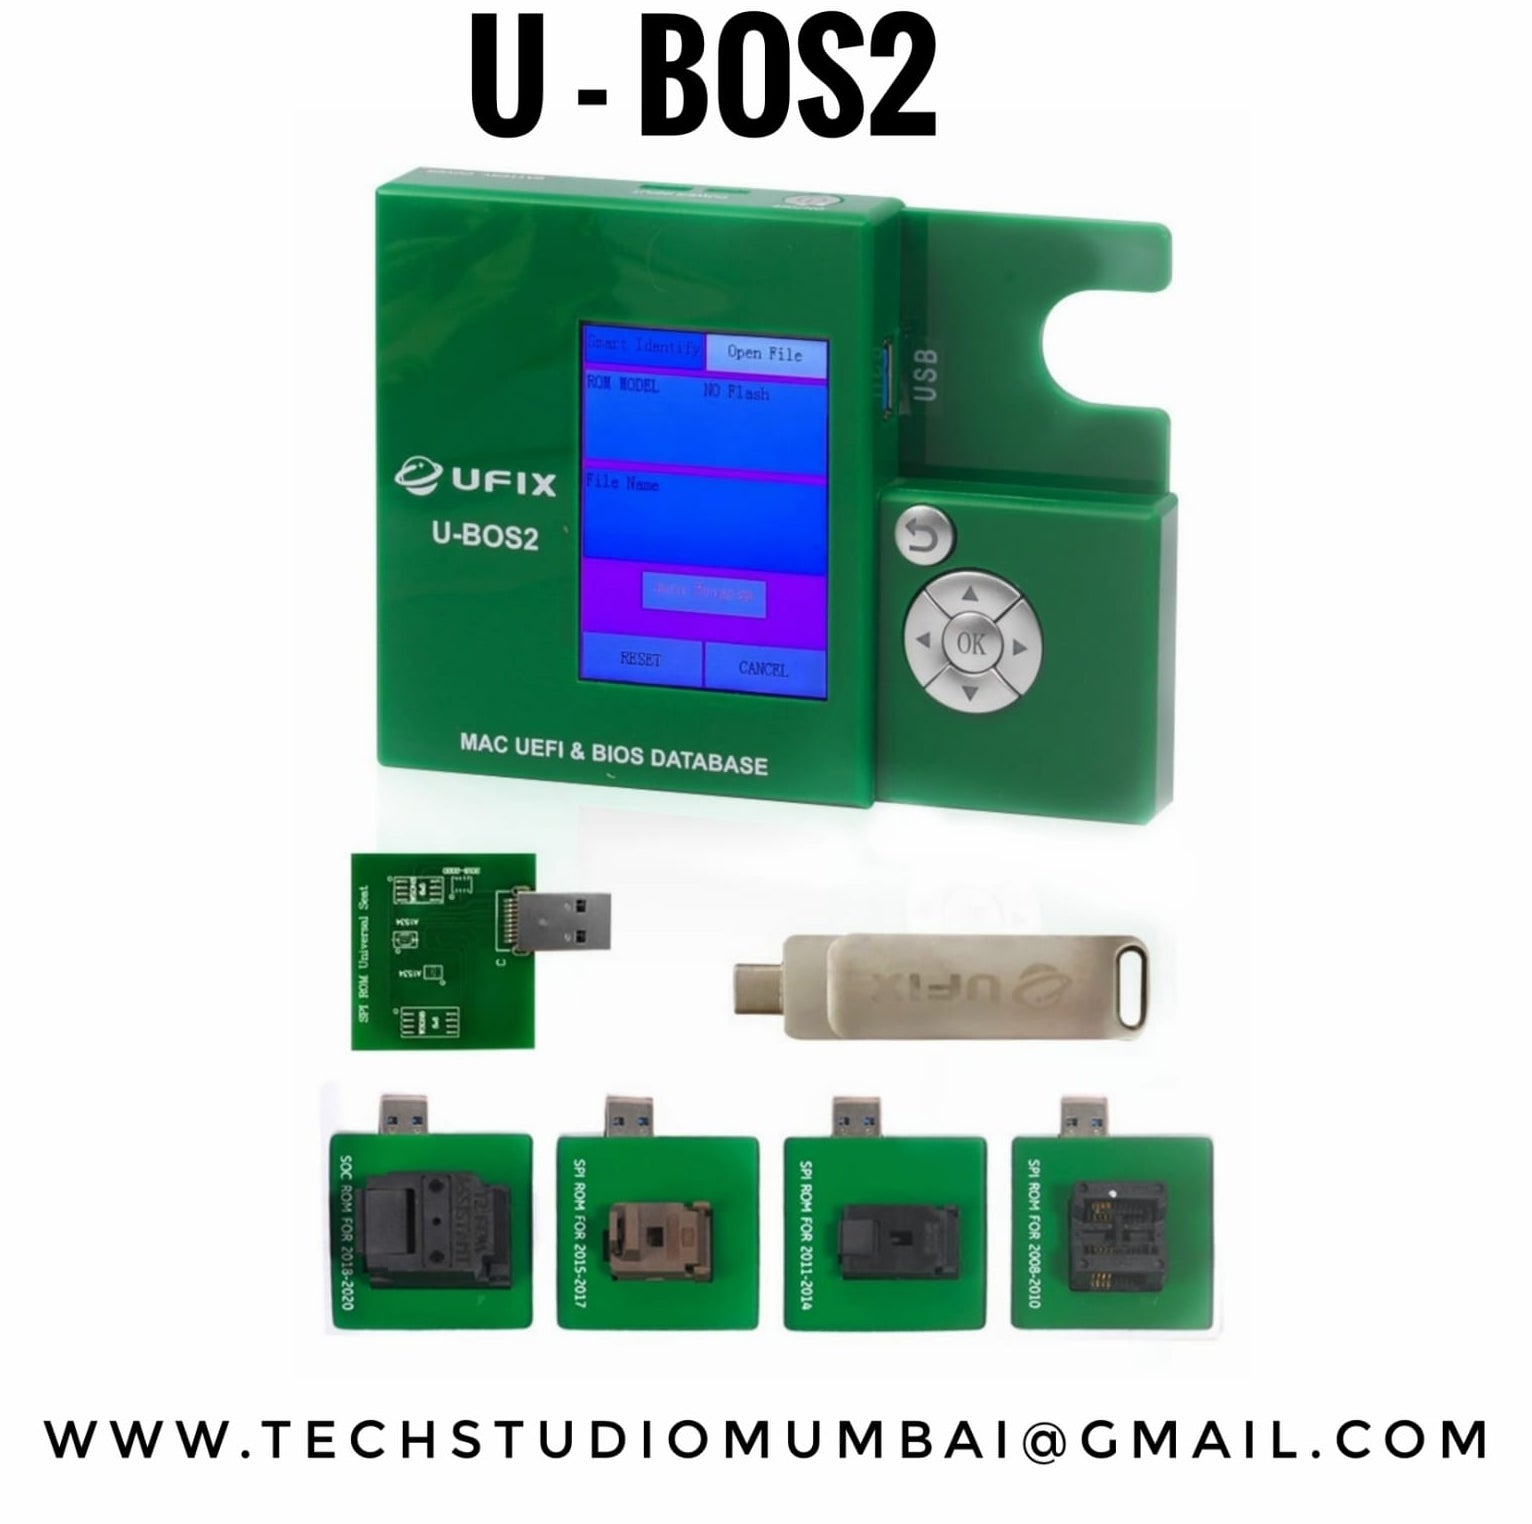 UFIX U-BOS2 DATA ASSISTANT FOR MACBOOK UEFI & BIOS DATABASE READ WRITE BACKUP REPAIR